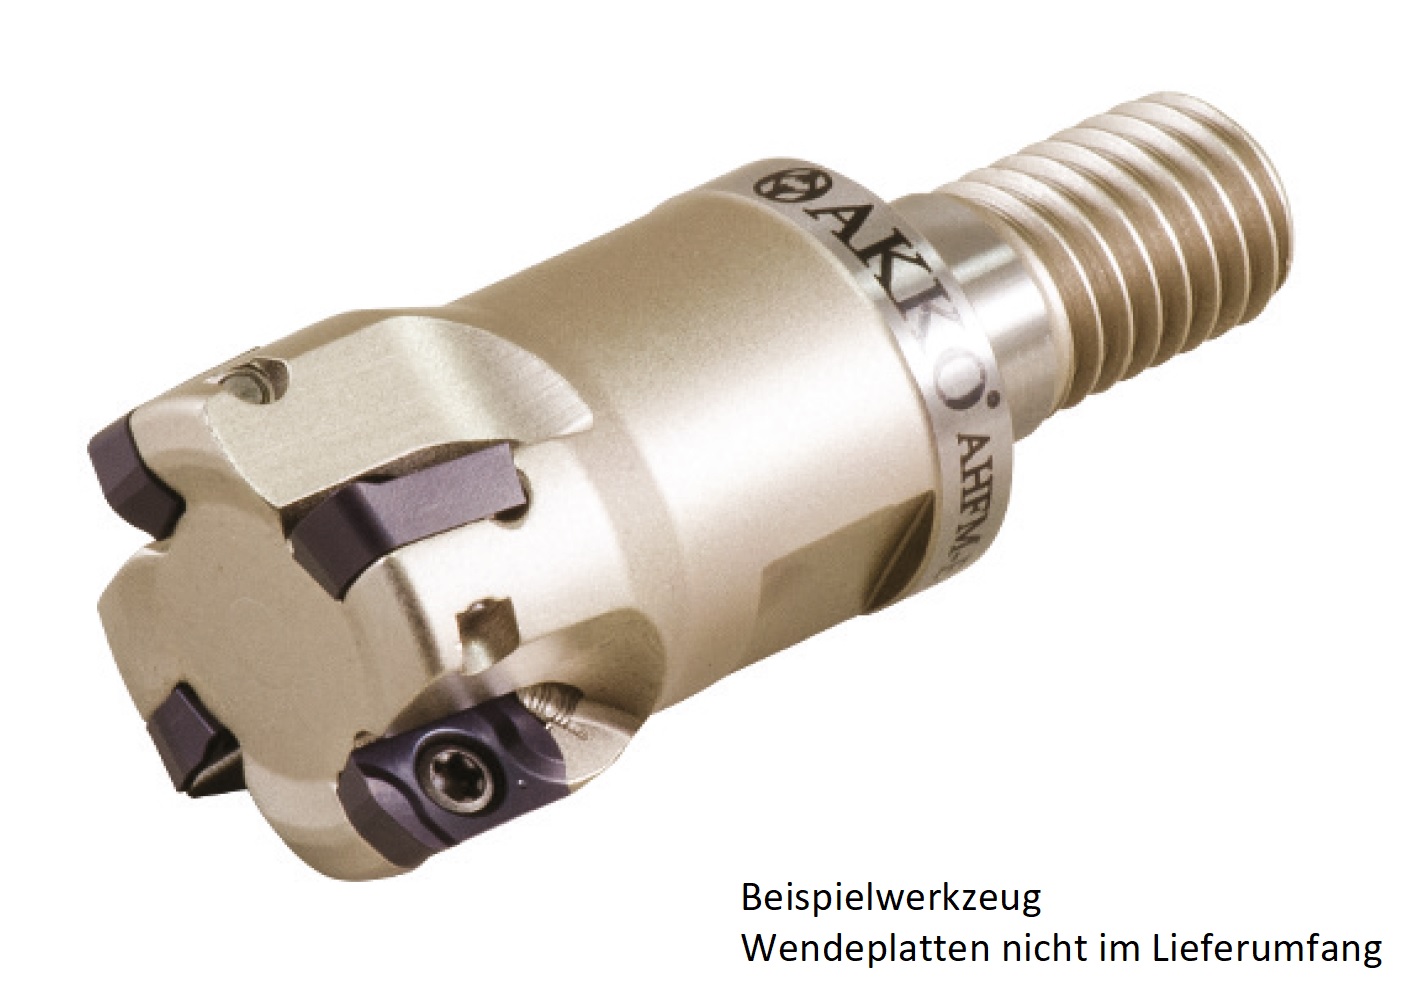 AKKO-Hochvorschub-Einschraubfräser ø 32 mm, kompatibel mit Dijet EP.. ZPMT YPHW 1003..
Gewindeschaft M16, mit Innenkühlung, Z=5